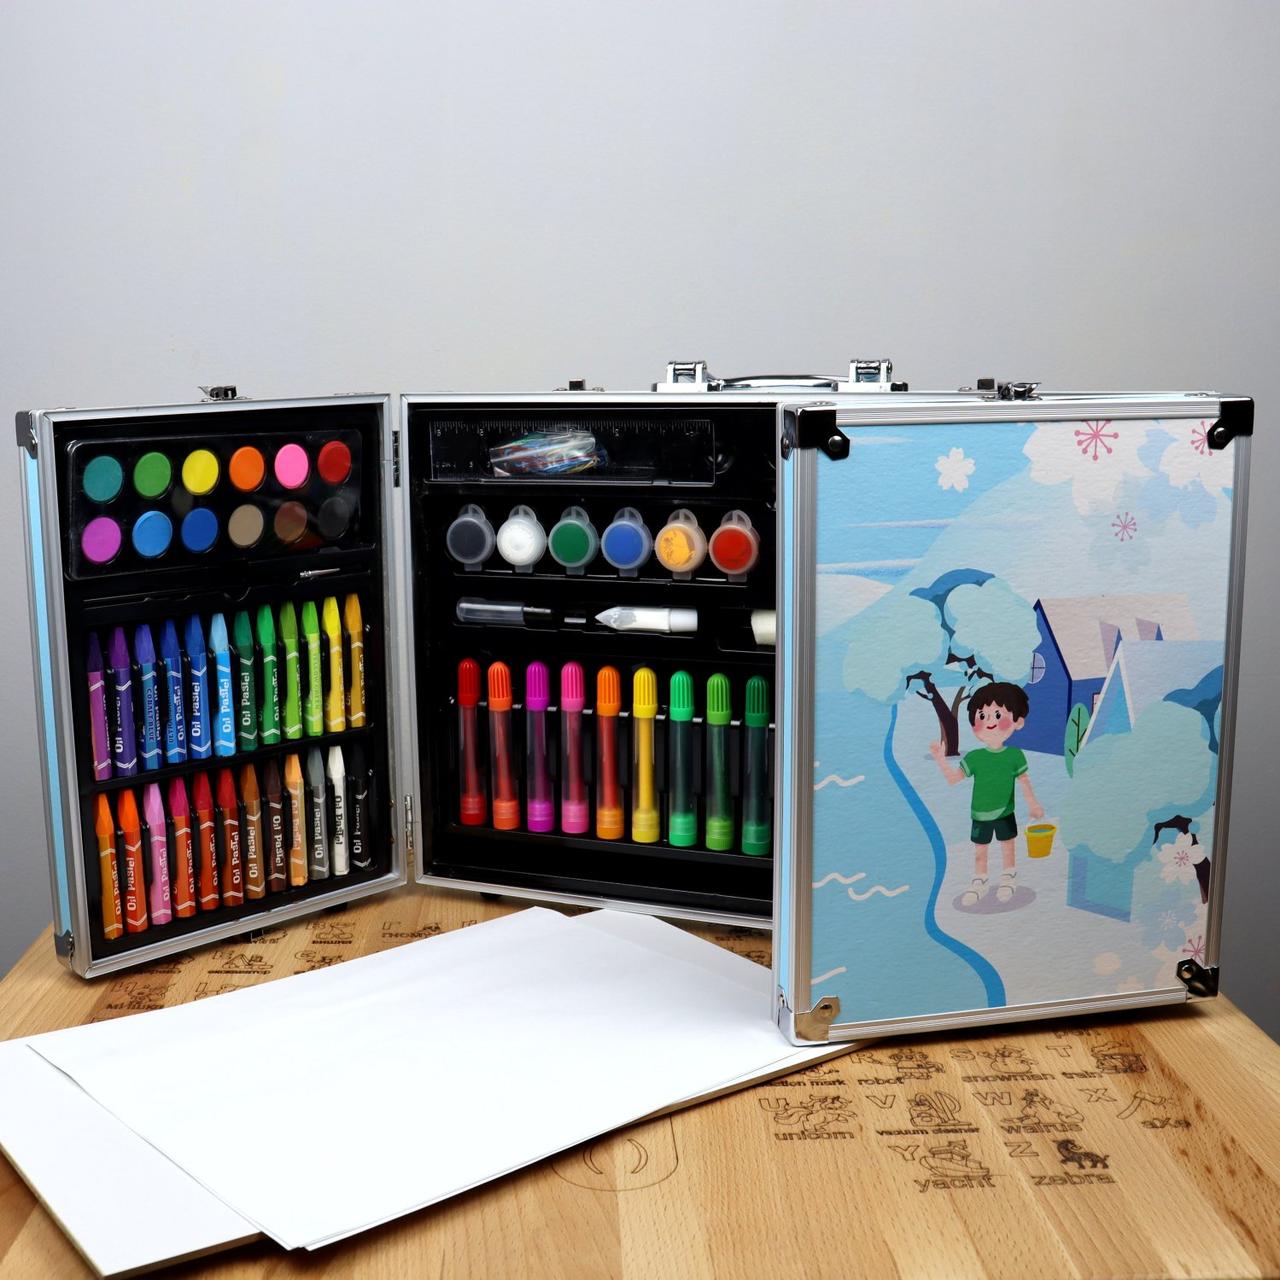 Набор для творчества Аква краски, фломастеры, карандаши, в чемодане 40,5-27-6 см, фото 1